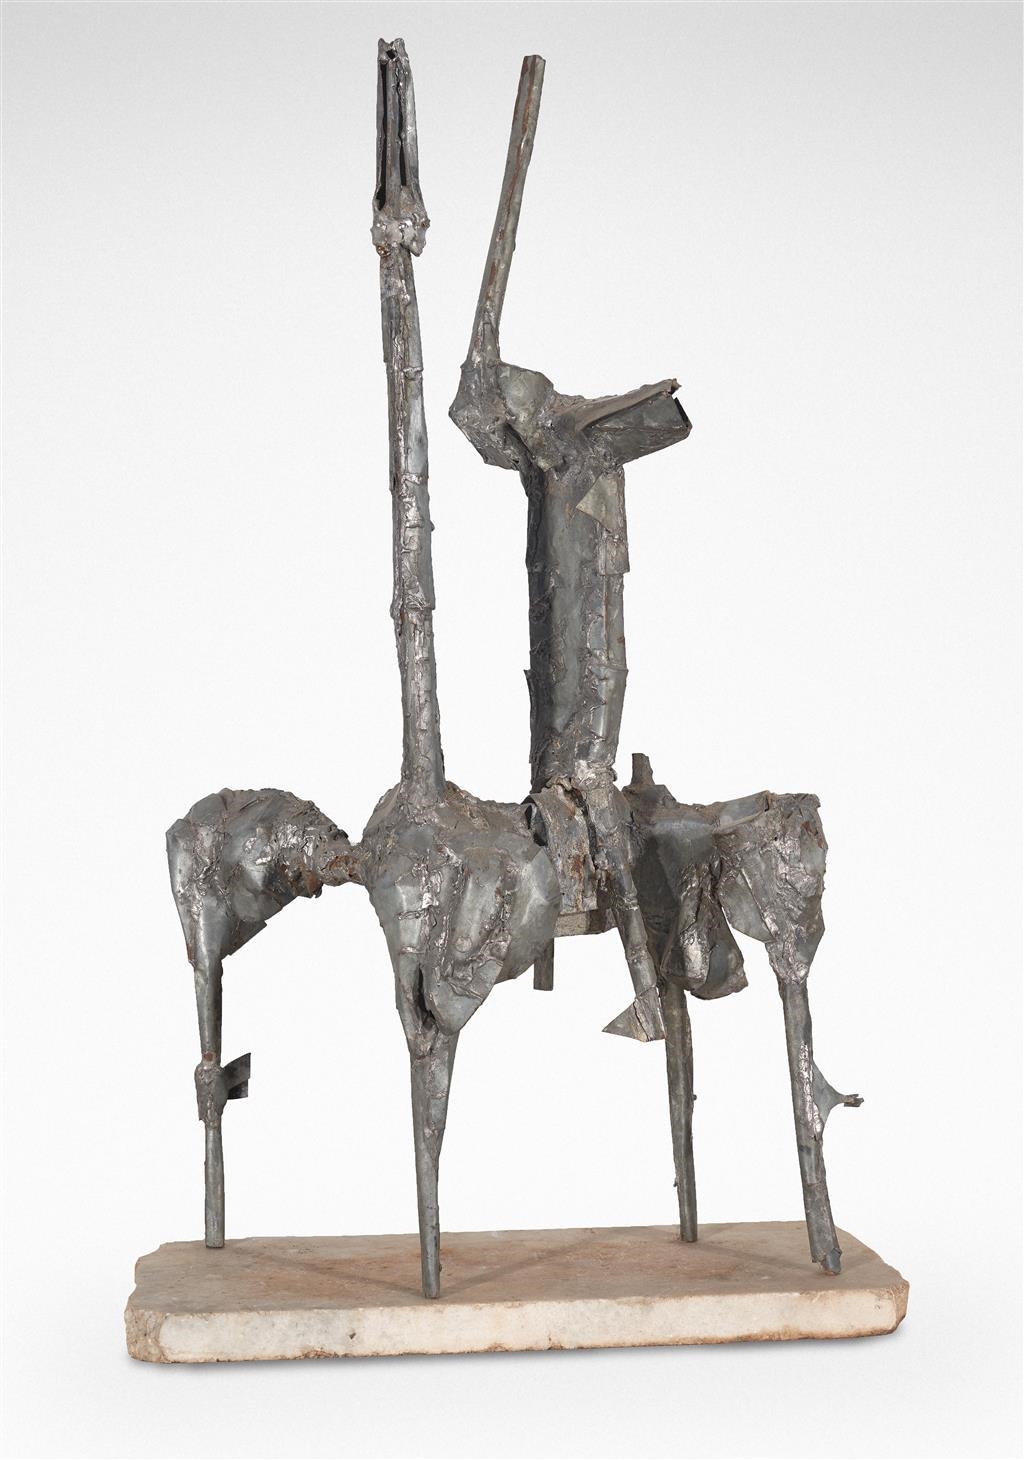 Maquette for Equestrian II by Herbert Flugelman, 1967